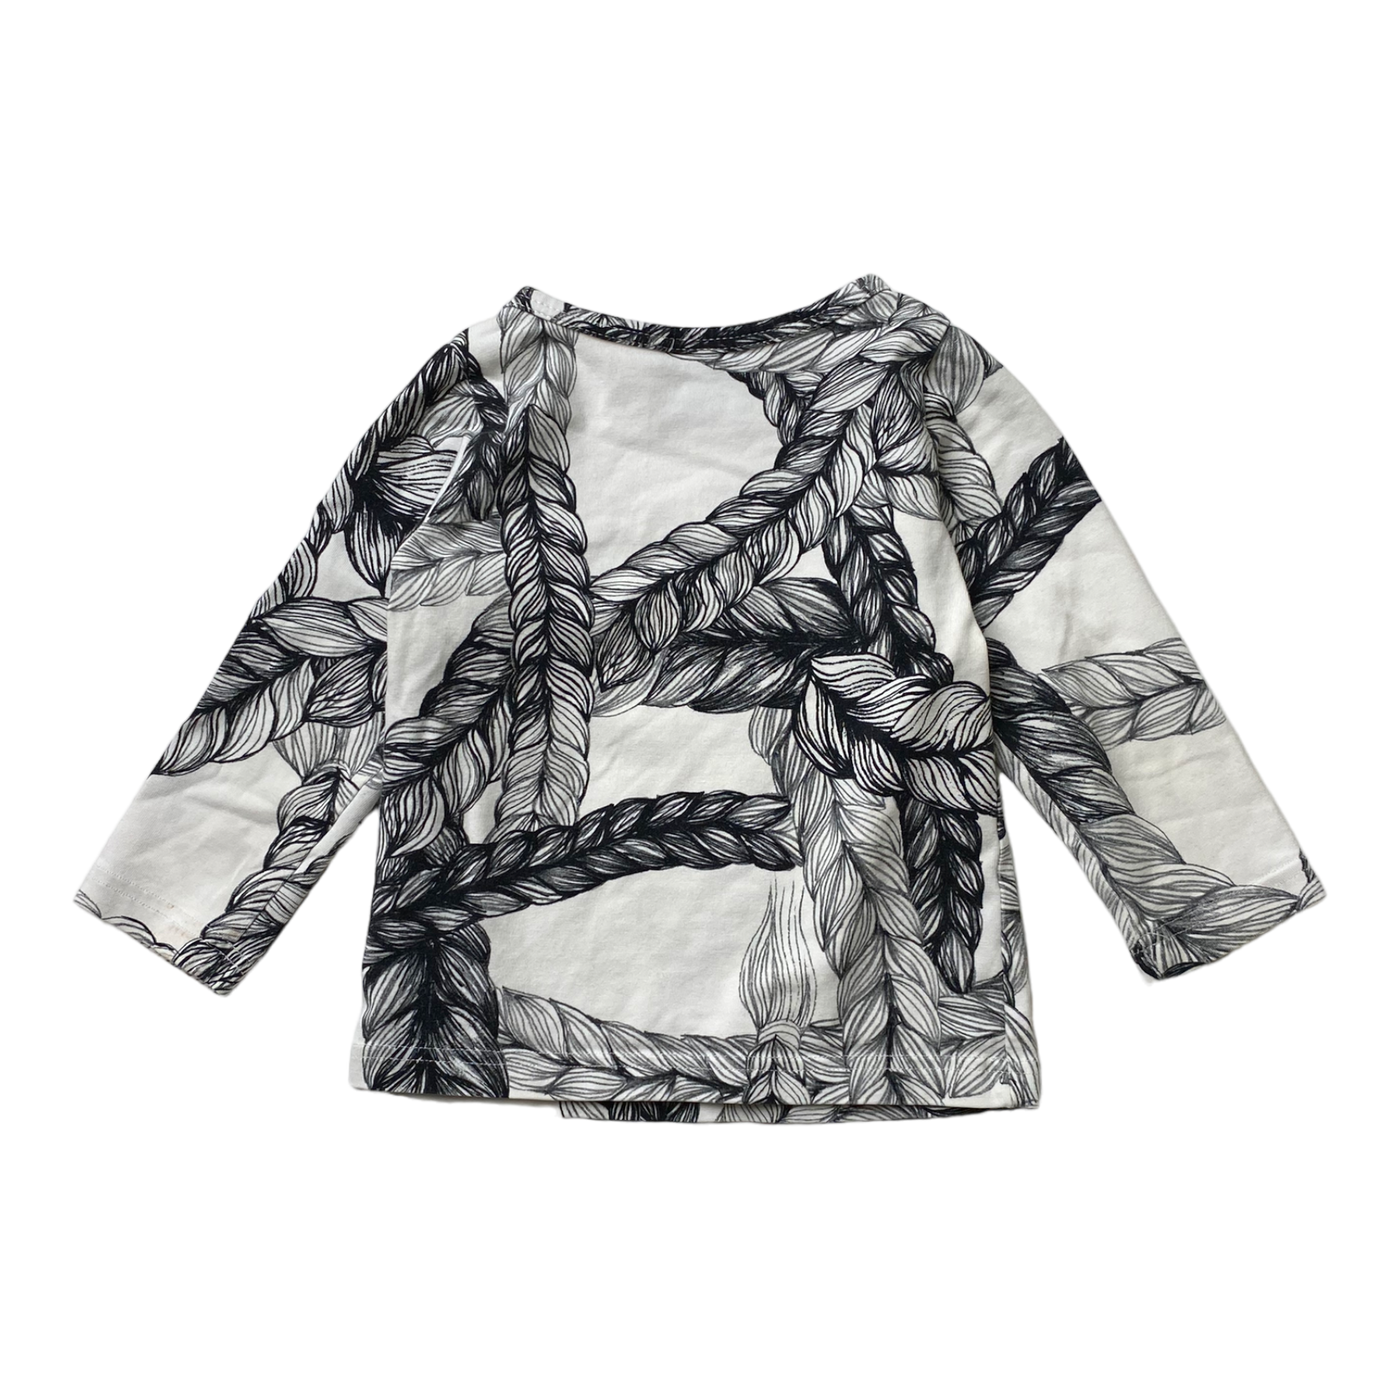 Vimma letti shirt, white & black | 80cm